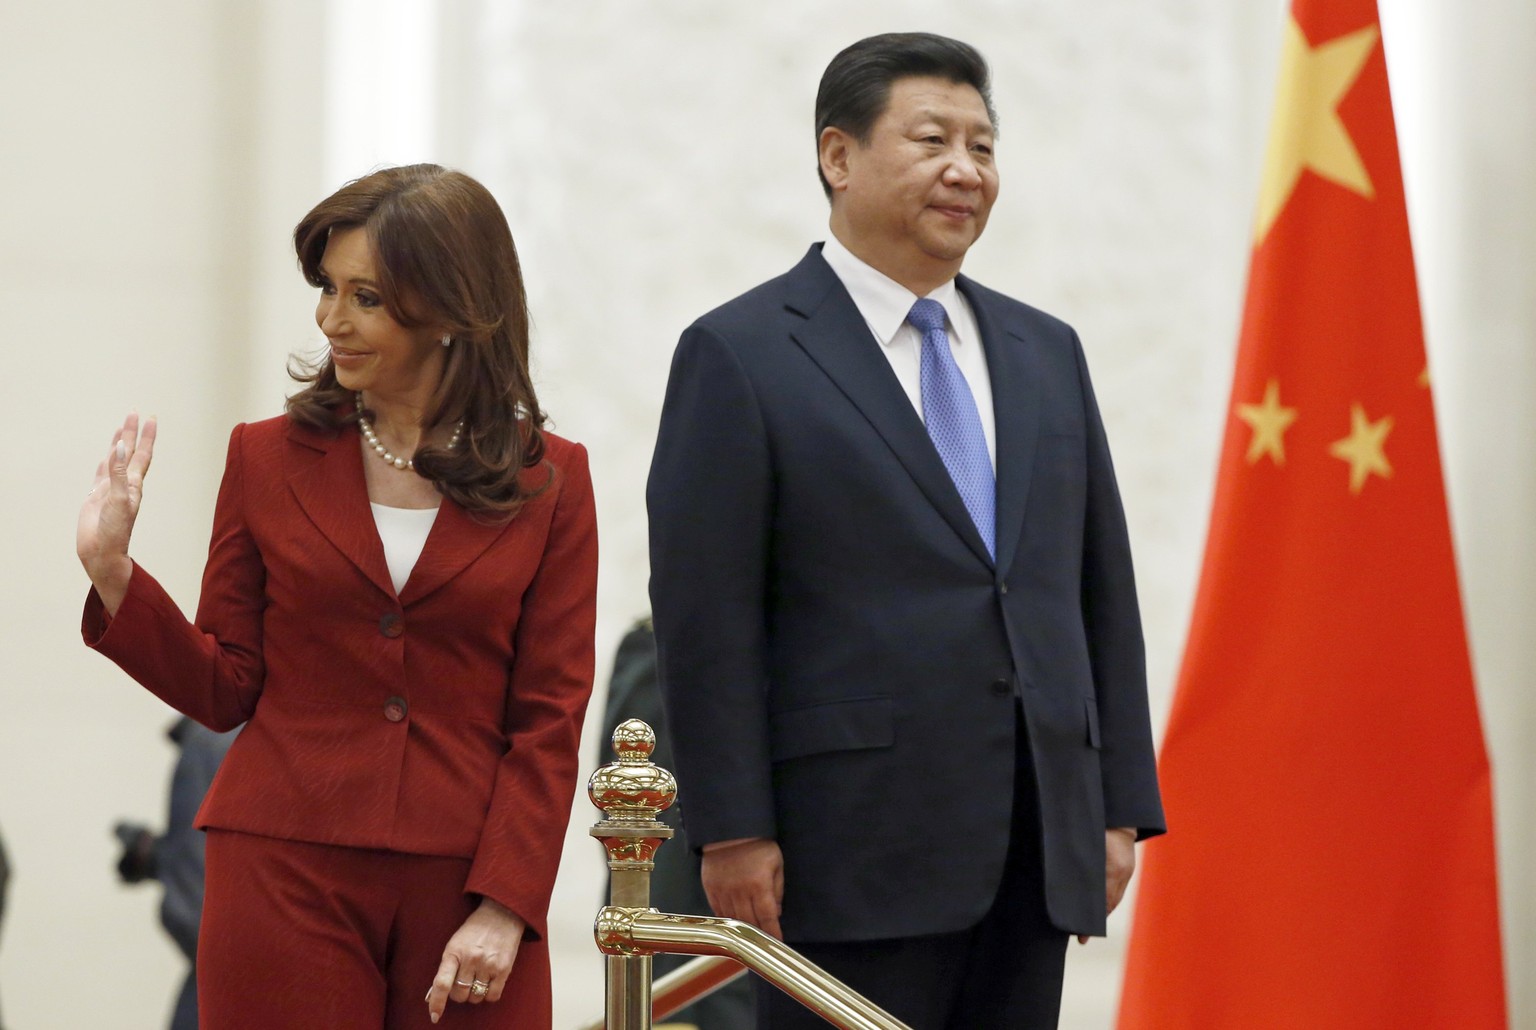 Cristina Fernández de Kirchner, argentinische Präsidentin, mit ihrem chinesischen Amtskollegen Xi Jinping in Peking (04.02.2015).